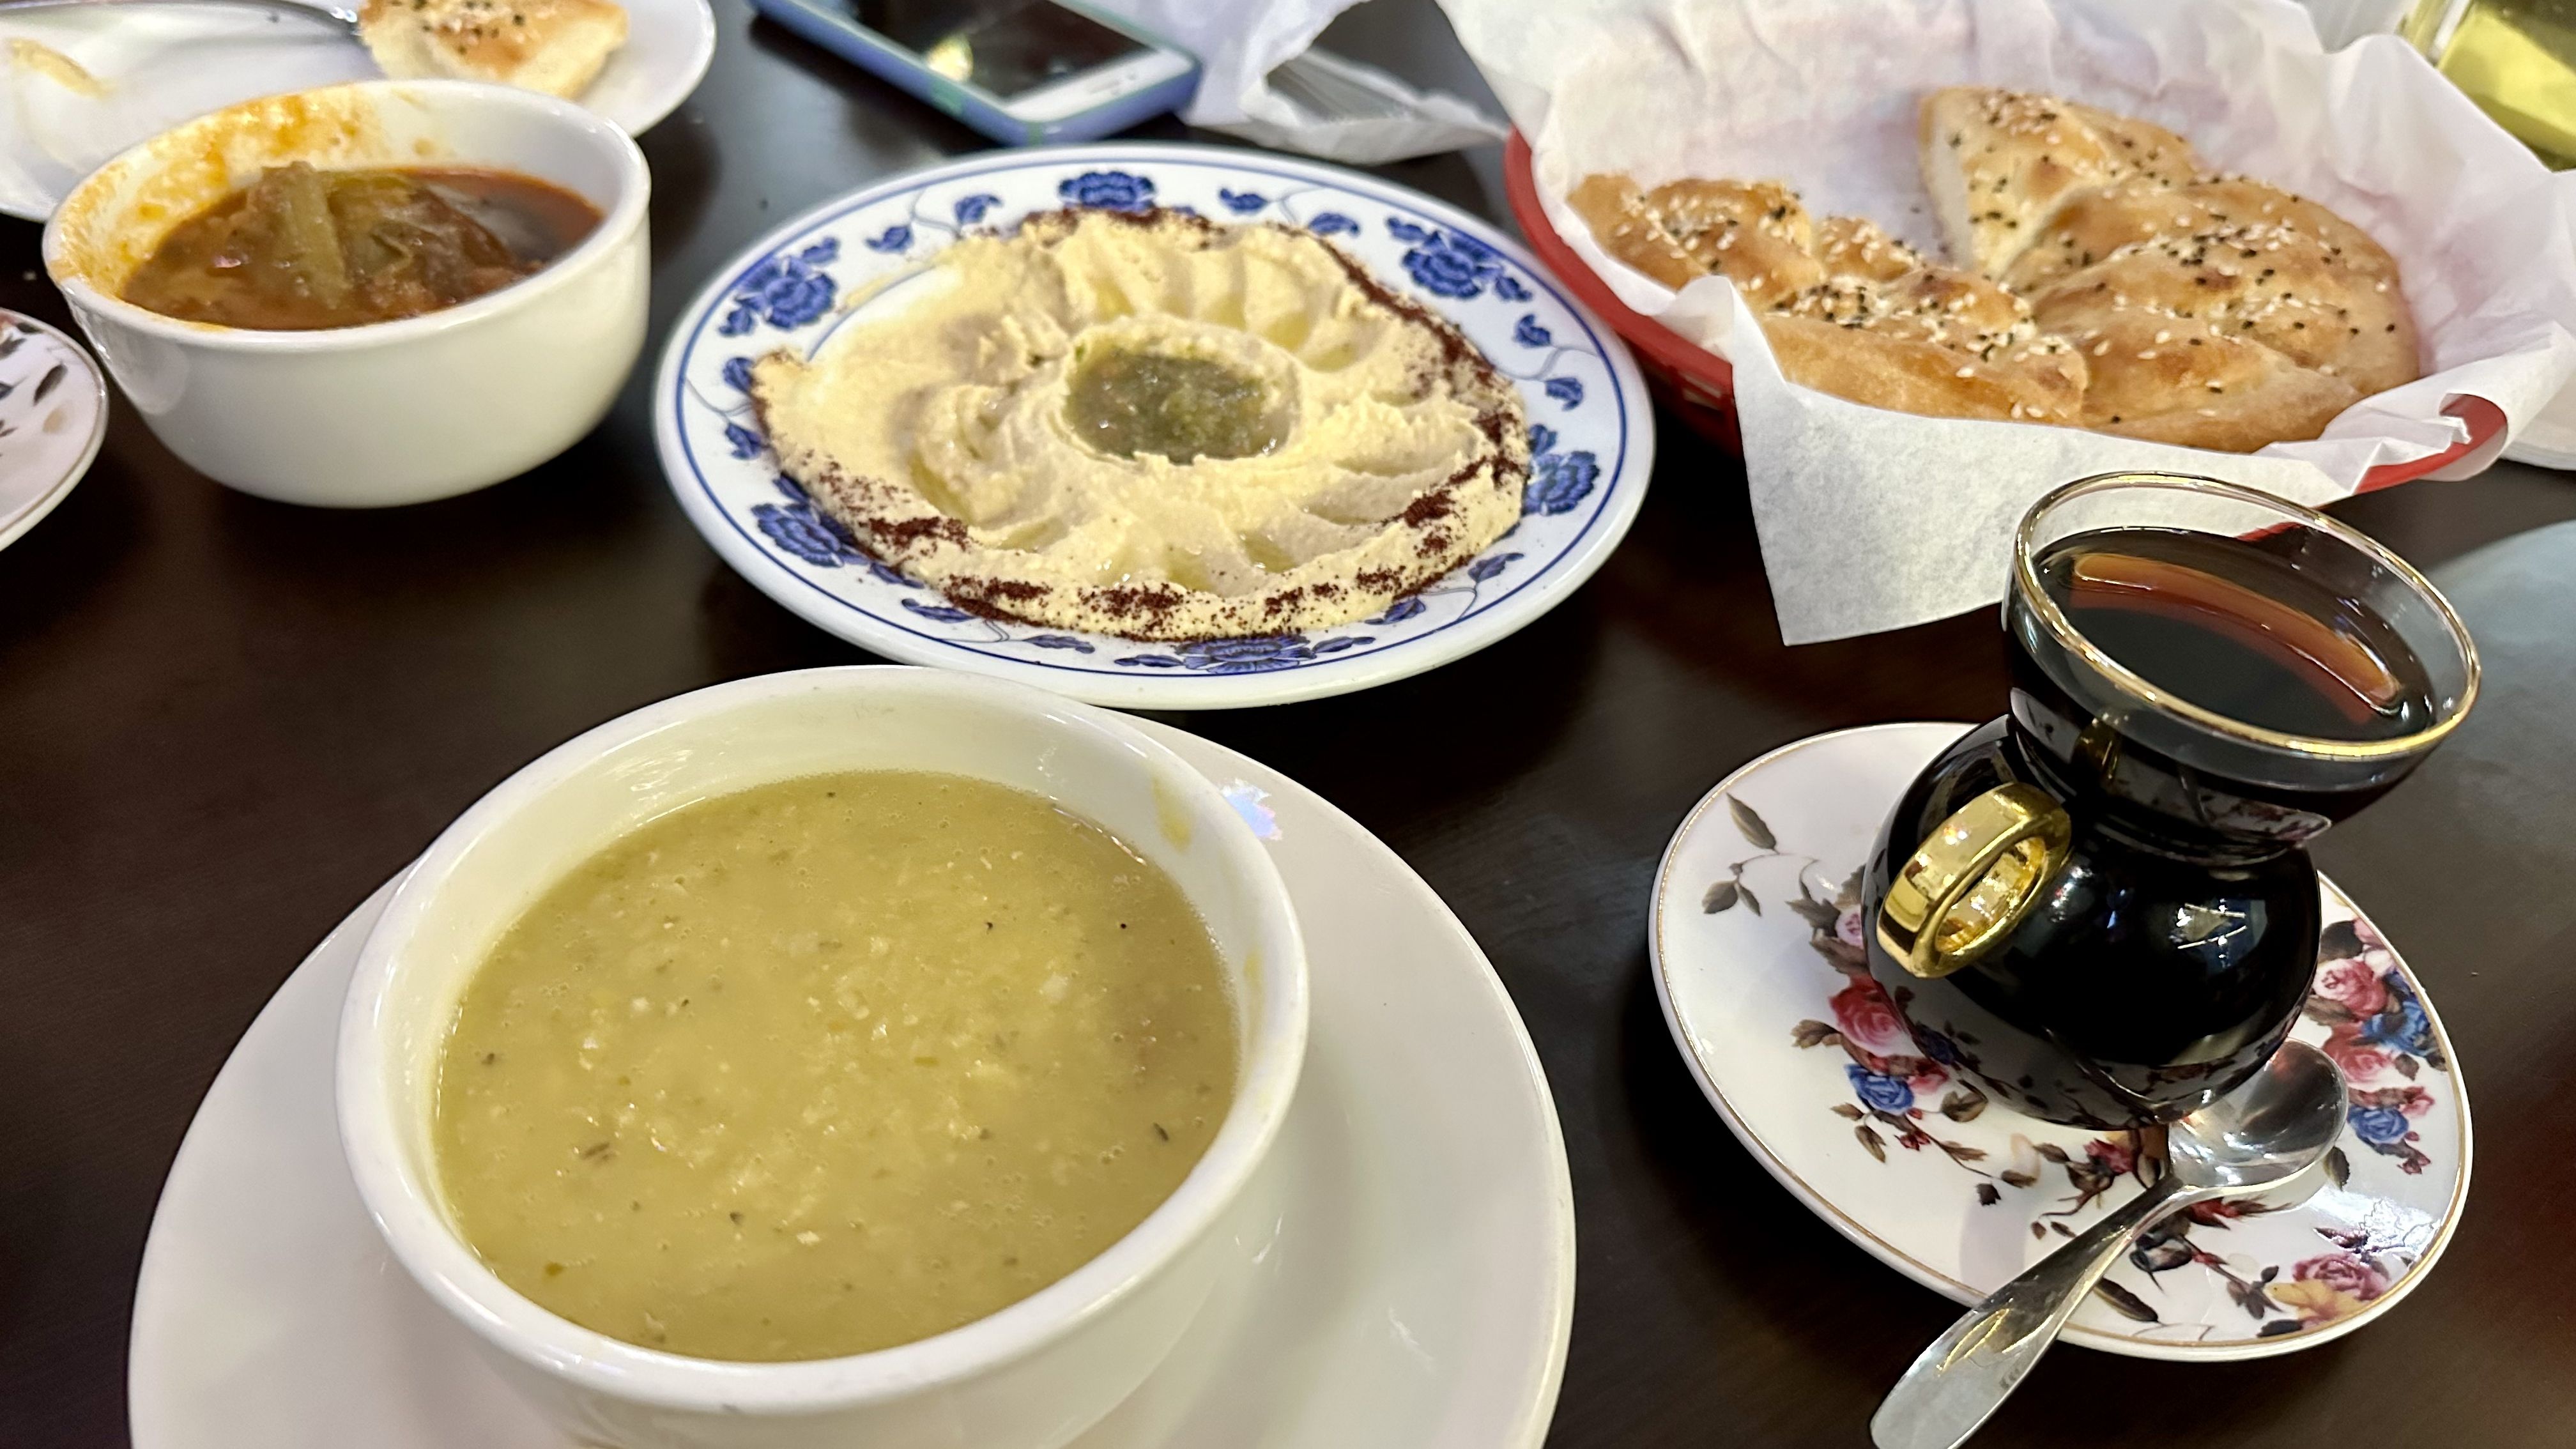 Photo shows lentil soup, hummus, black tea, fresh bread and eggplant soup.